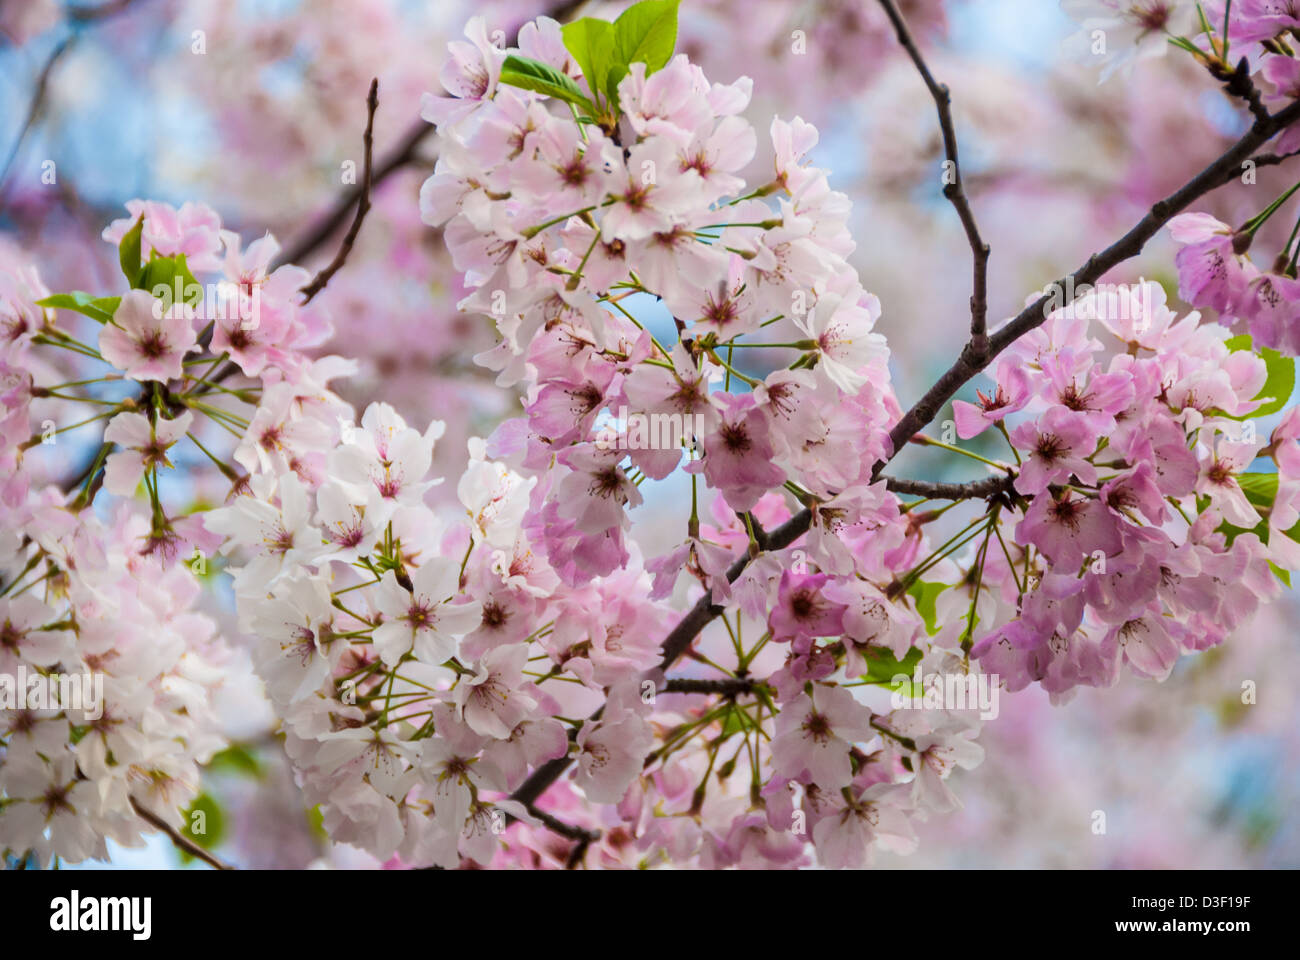 Hermosas flores de cerezo estallando con una paleta de colores pastel de primavera en el Parque Stone Mountain cerca de Atlanta, Georgia, EUA. Foto de stock